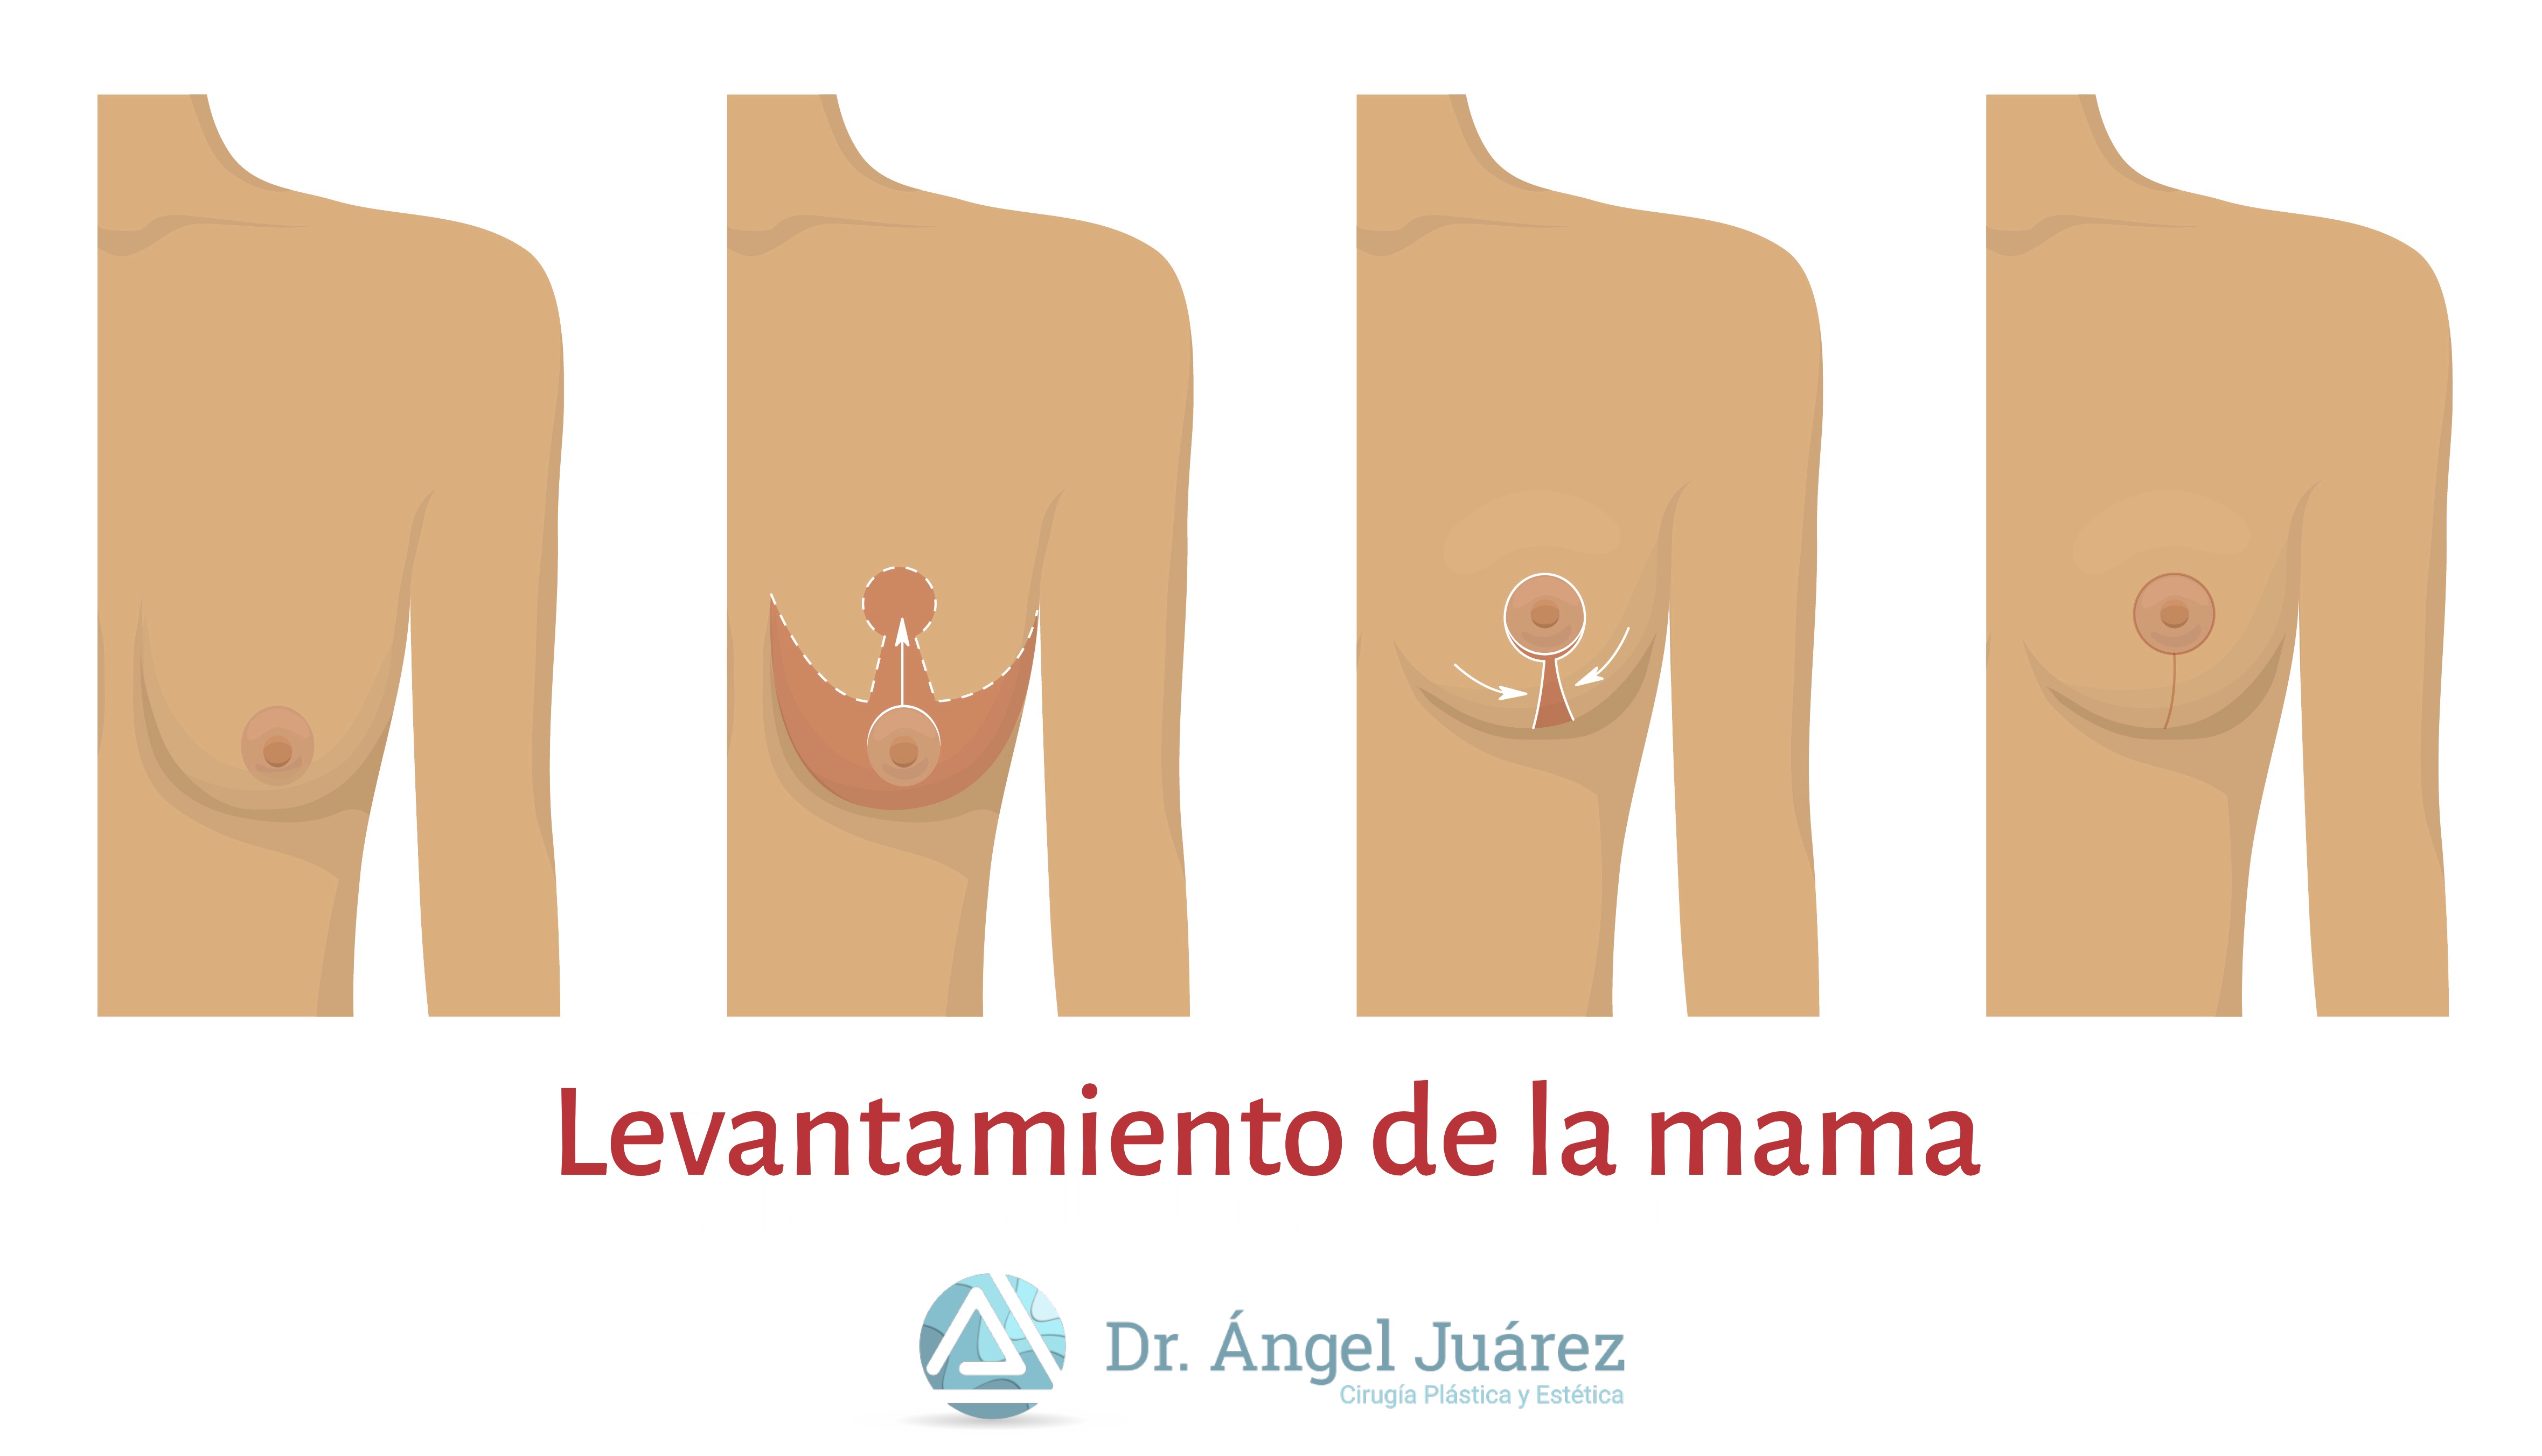 Levantamiento de la mama - Dr. Ángel Juárez